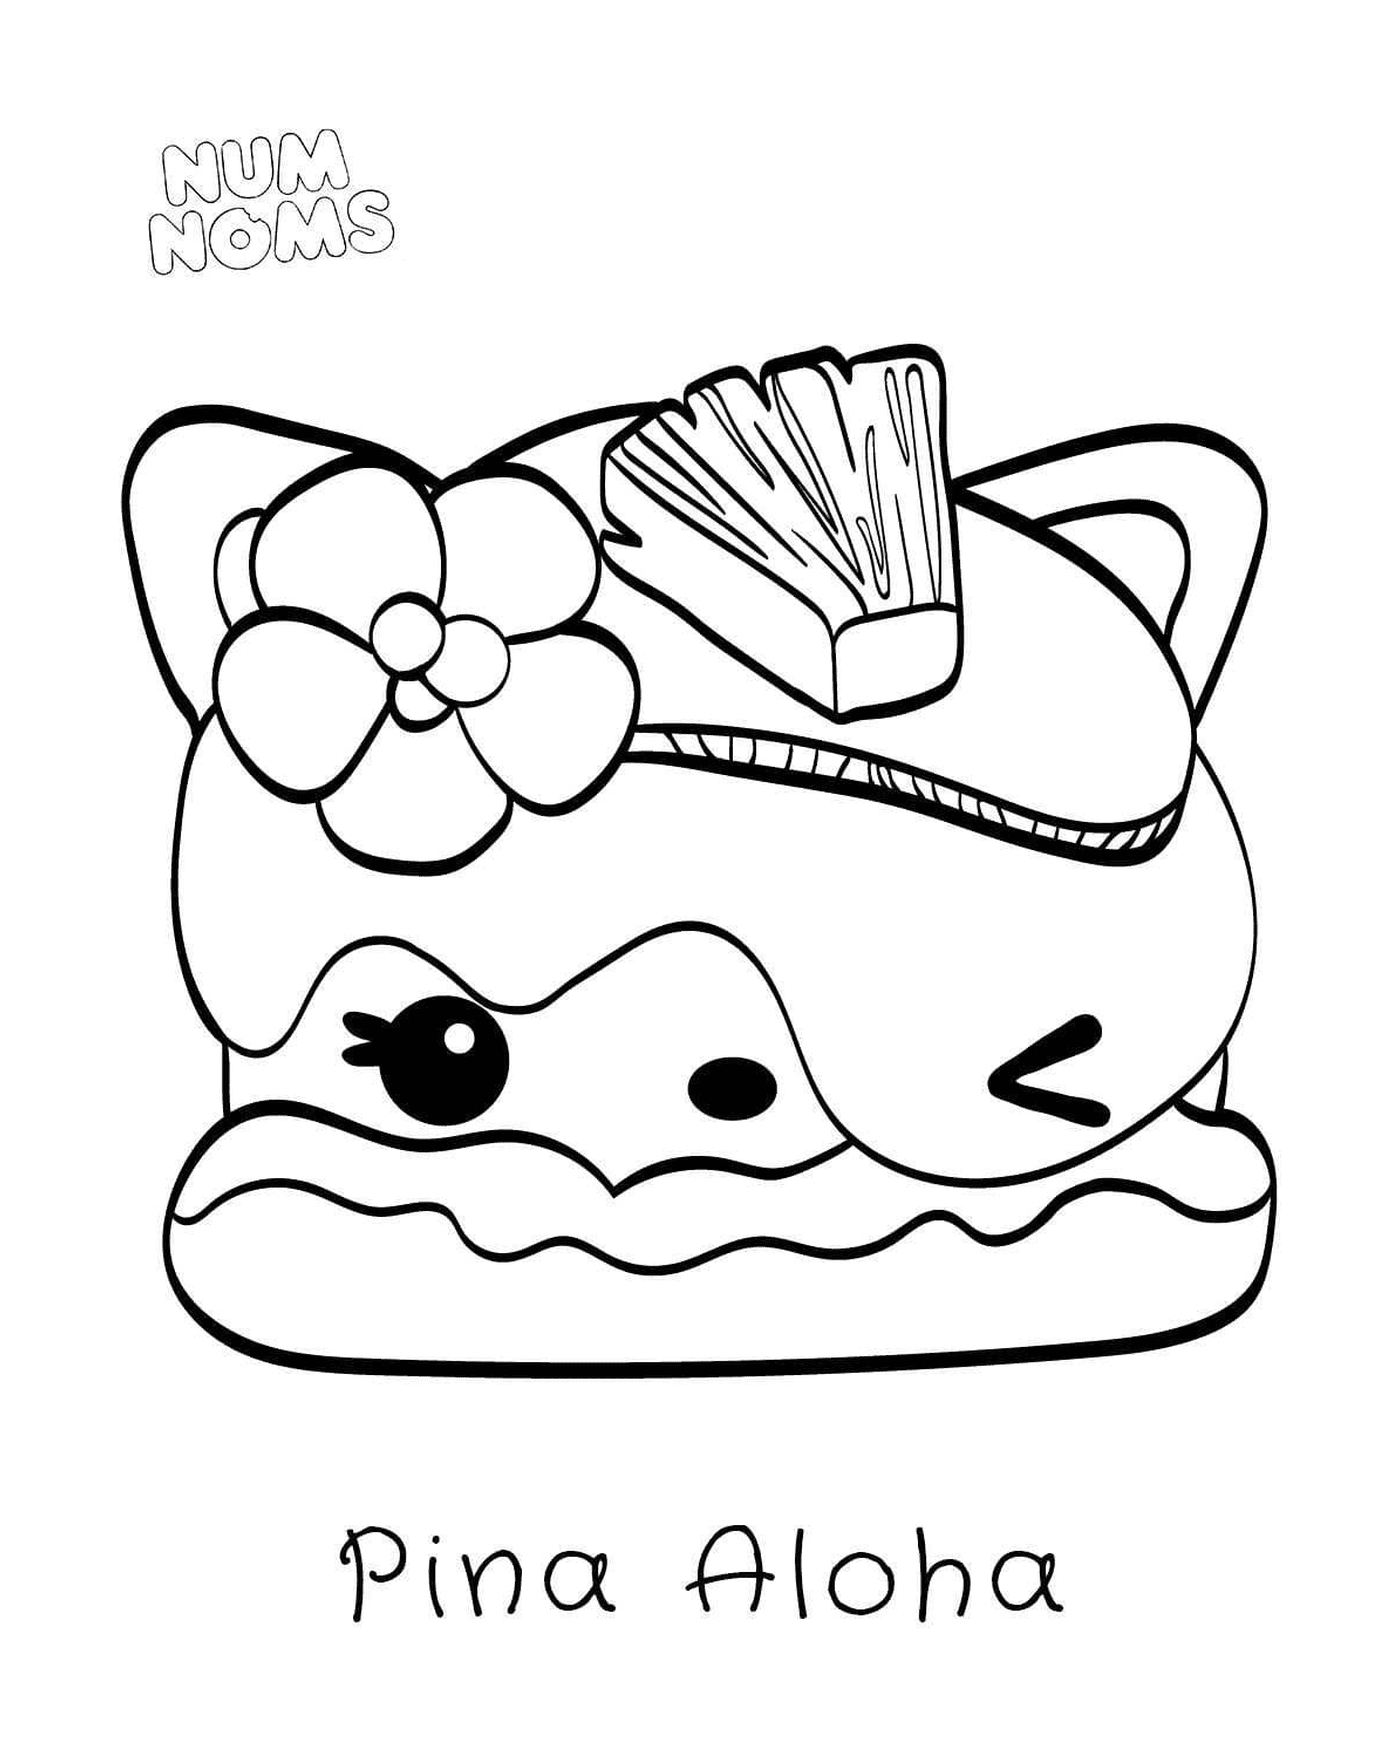  Pina Aloha Num名称,水果三明治 